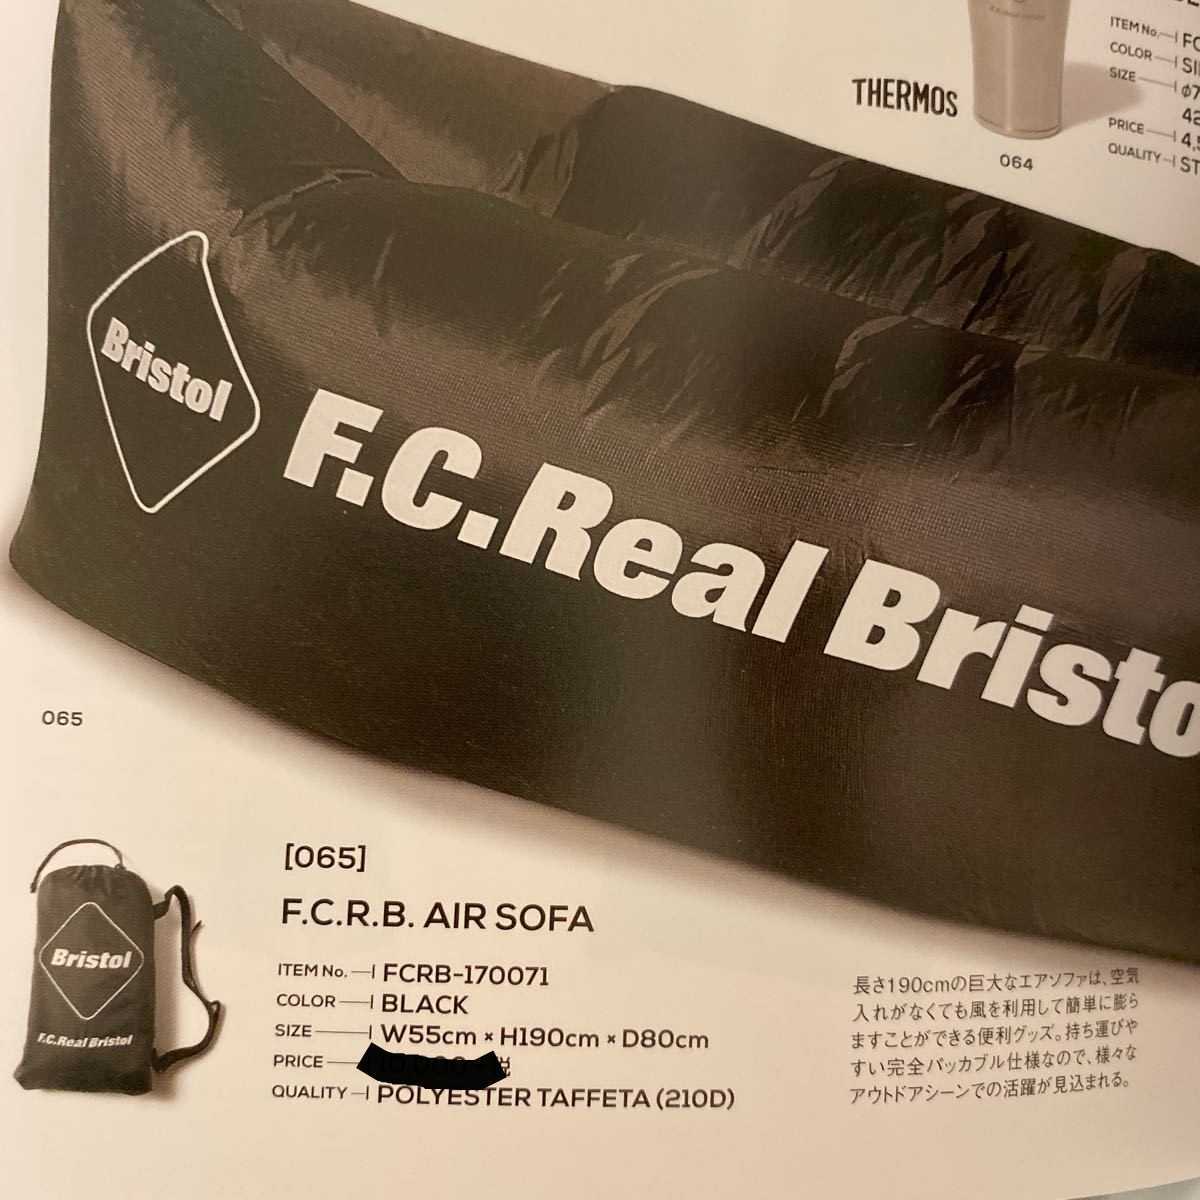 新品 FCRB AIR SOFA bristol エアーソファー キャンプ アウトドア ブリストル